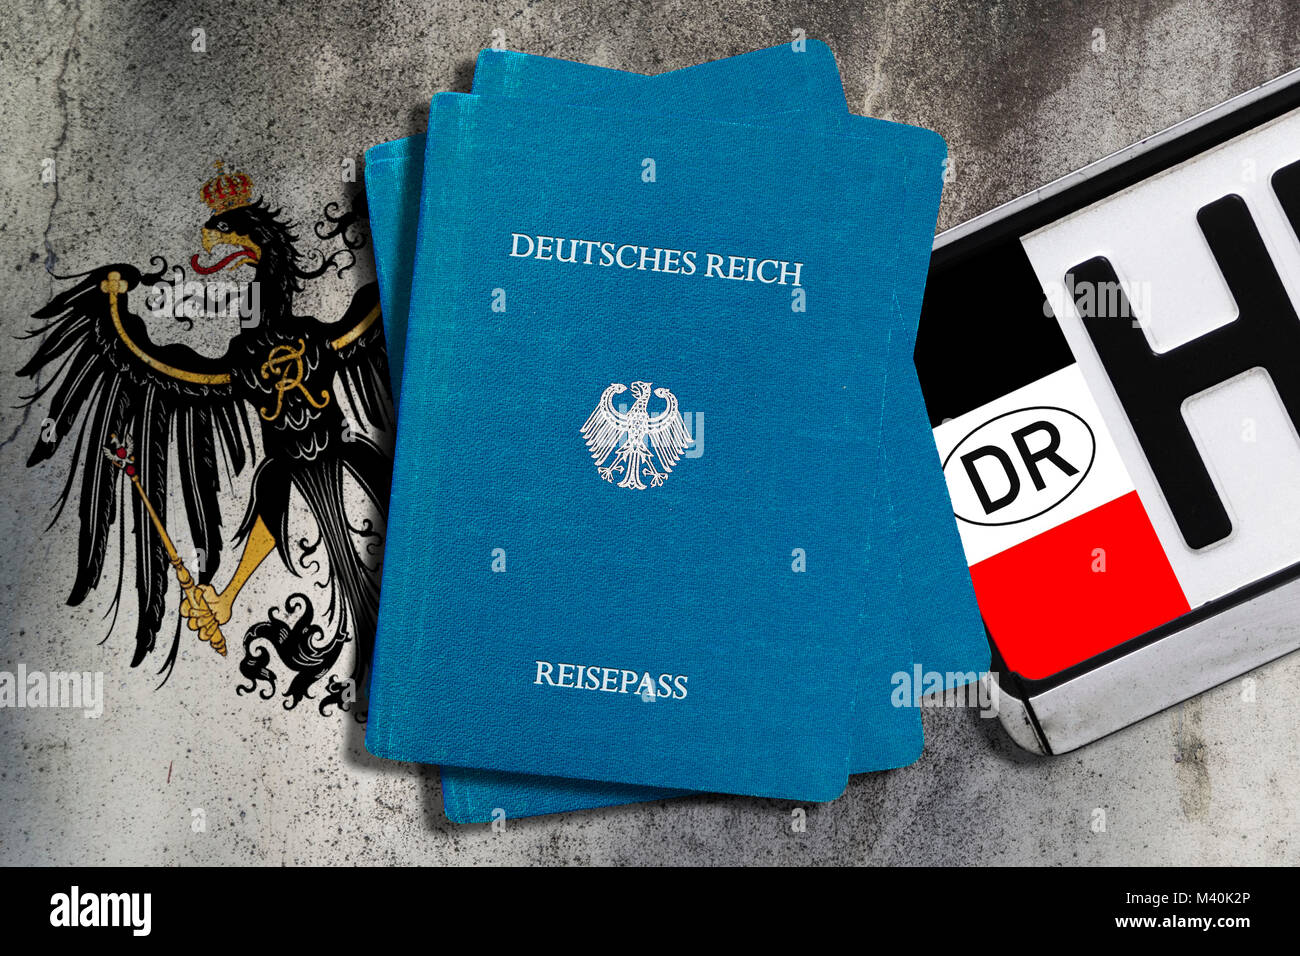 Reich cittadinanza passaporti, Imperial Eagle e Reich cittadinanza numero di targa, un'icona Foto, Reichsbürger-Pässe, Reichsadler und Reichsbürger-Nummern Foto Stock